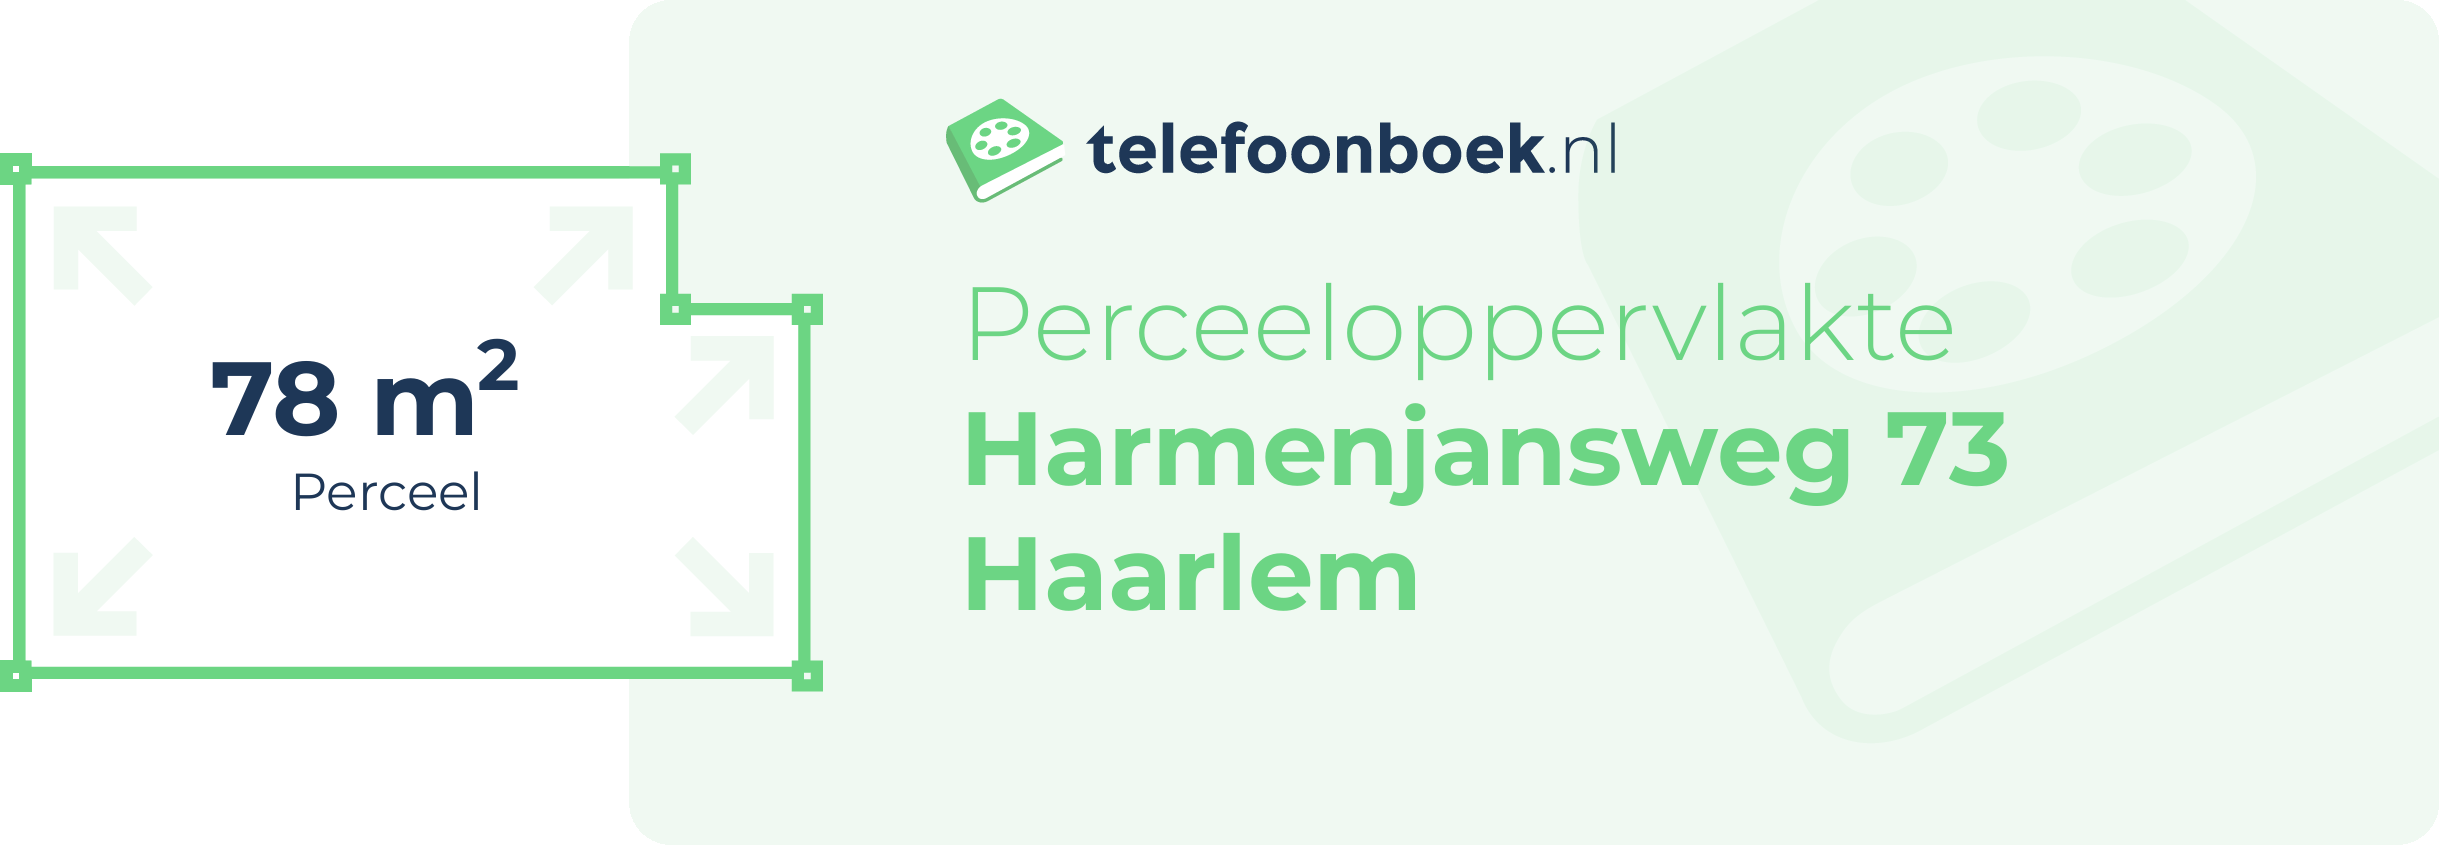 Perceeloppervlakte Harmenjansweg 73 Haarlem